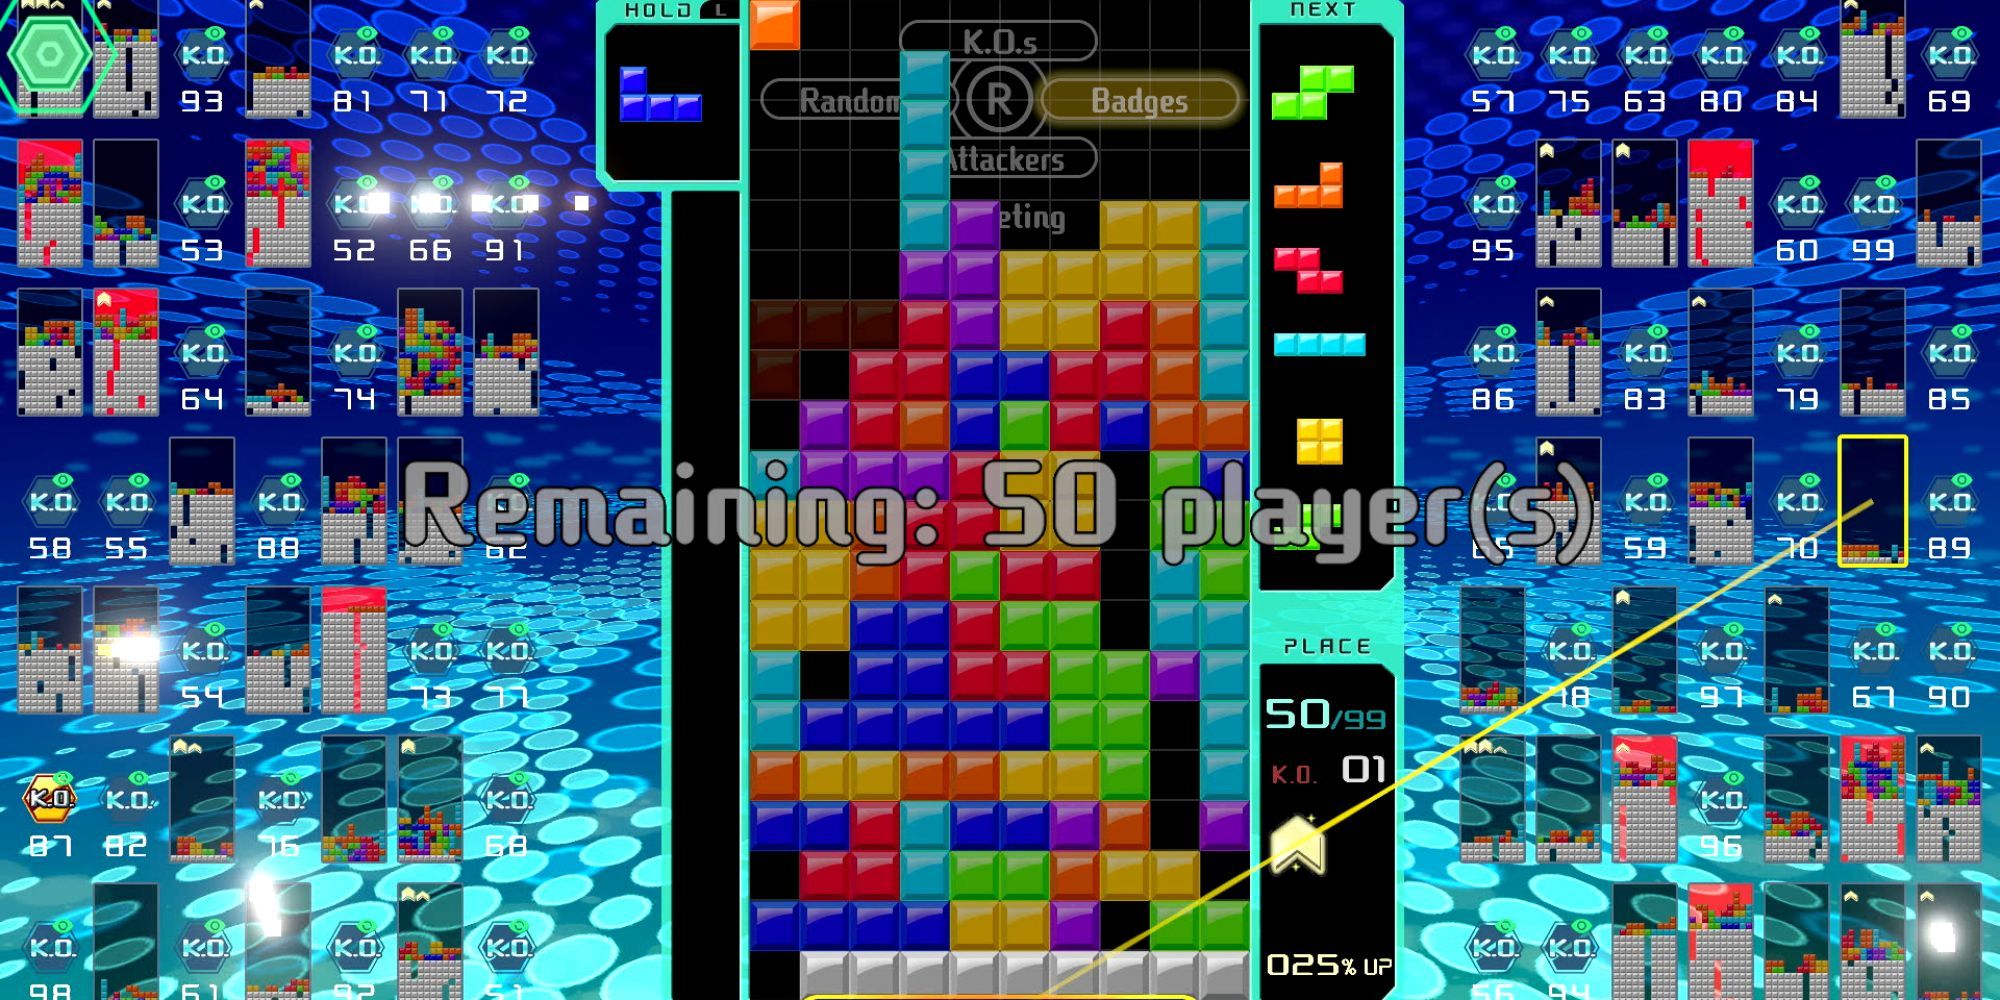 A Tetris 99 match 